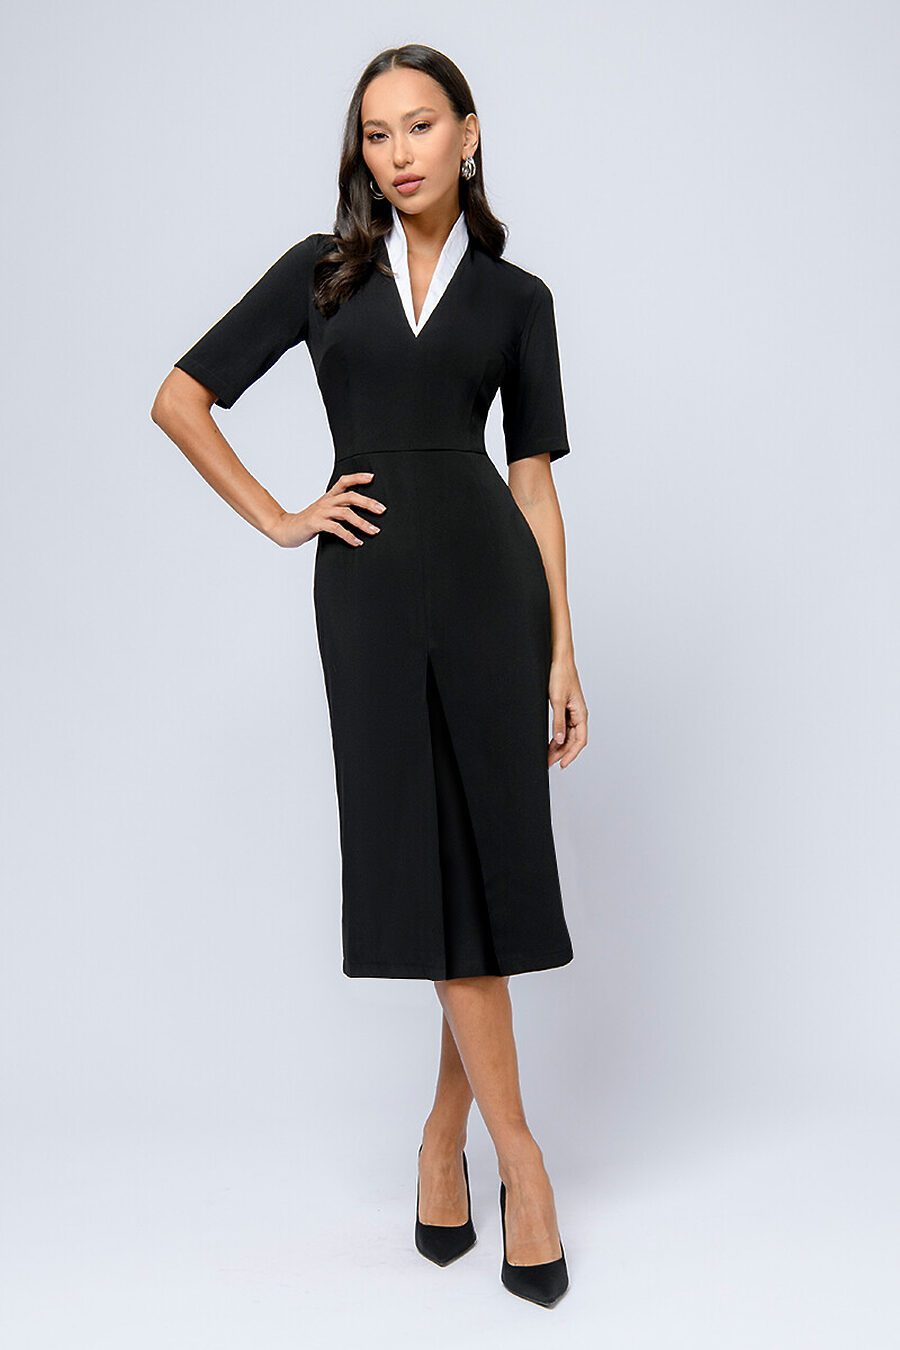 Платье для женщин 1001 DRESS 807707 купить оптом от производителя. Совместная покупка женской одежды в OptMoyo